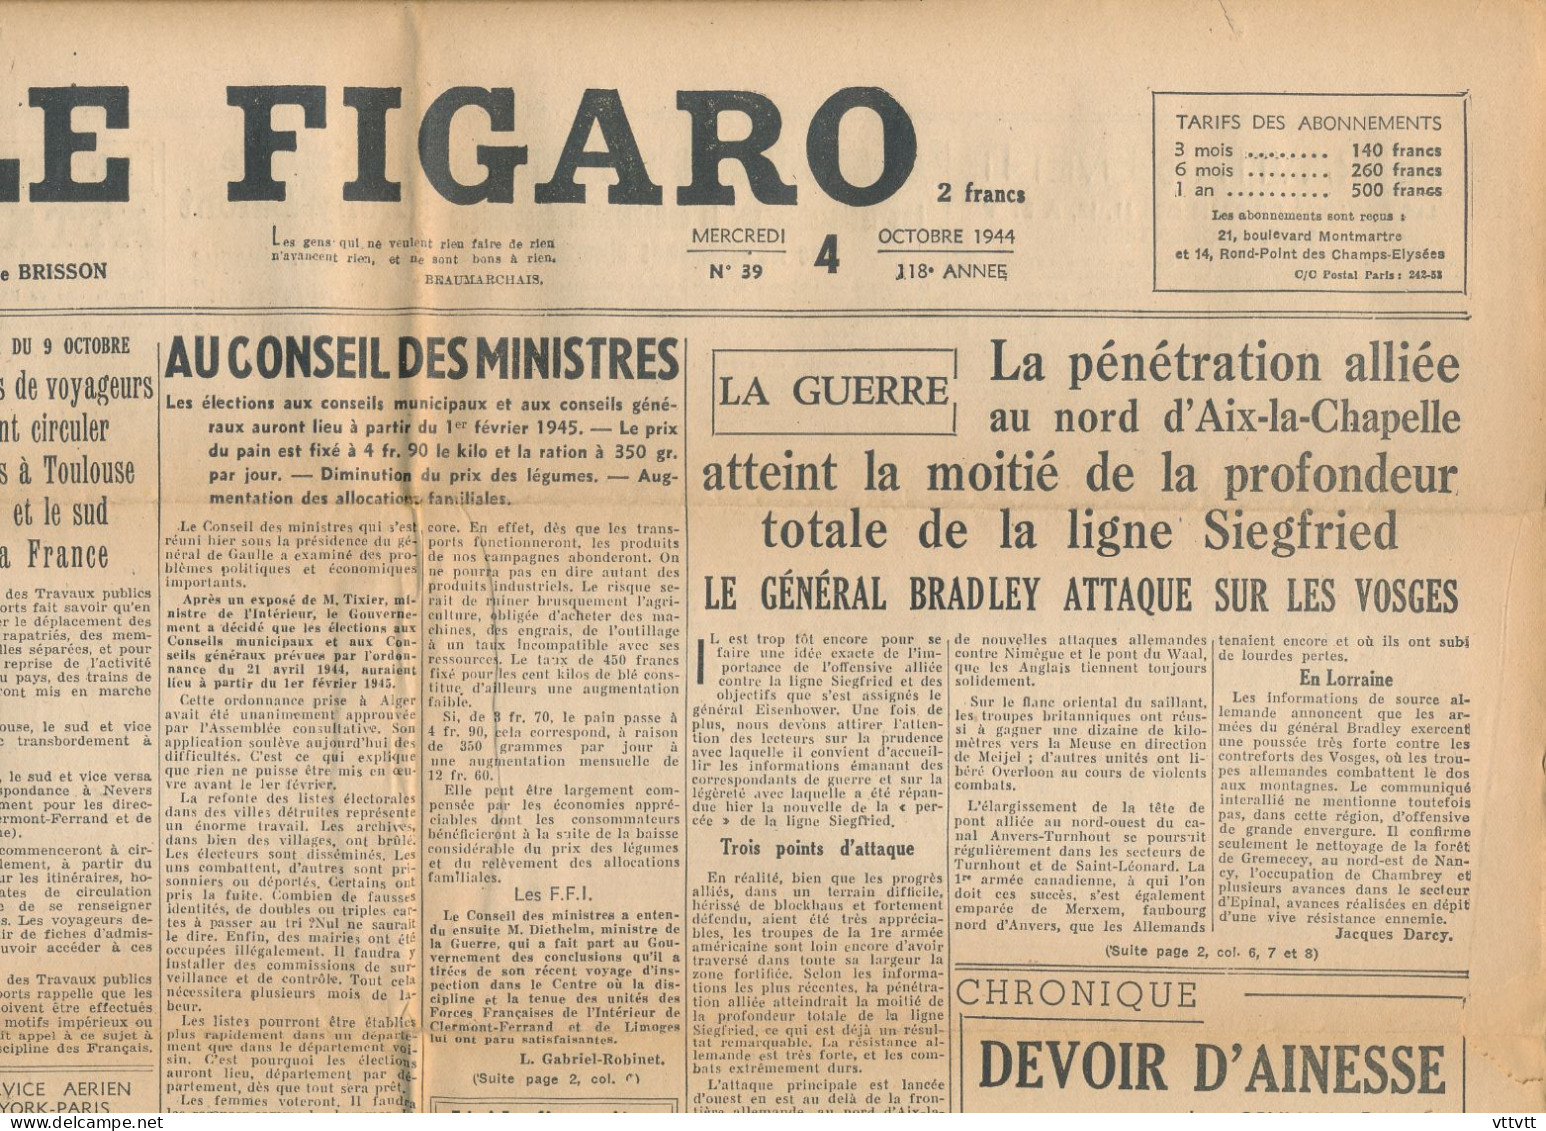 LE FIGARO, Mercredi 4 Octobre 1944, N° 39, Train Paris-Toulouse-Lyon, Guerre Aix-la-Chapelle, Conseil Des Ministres... - Informations Générales